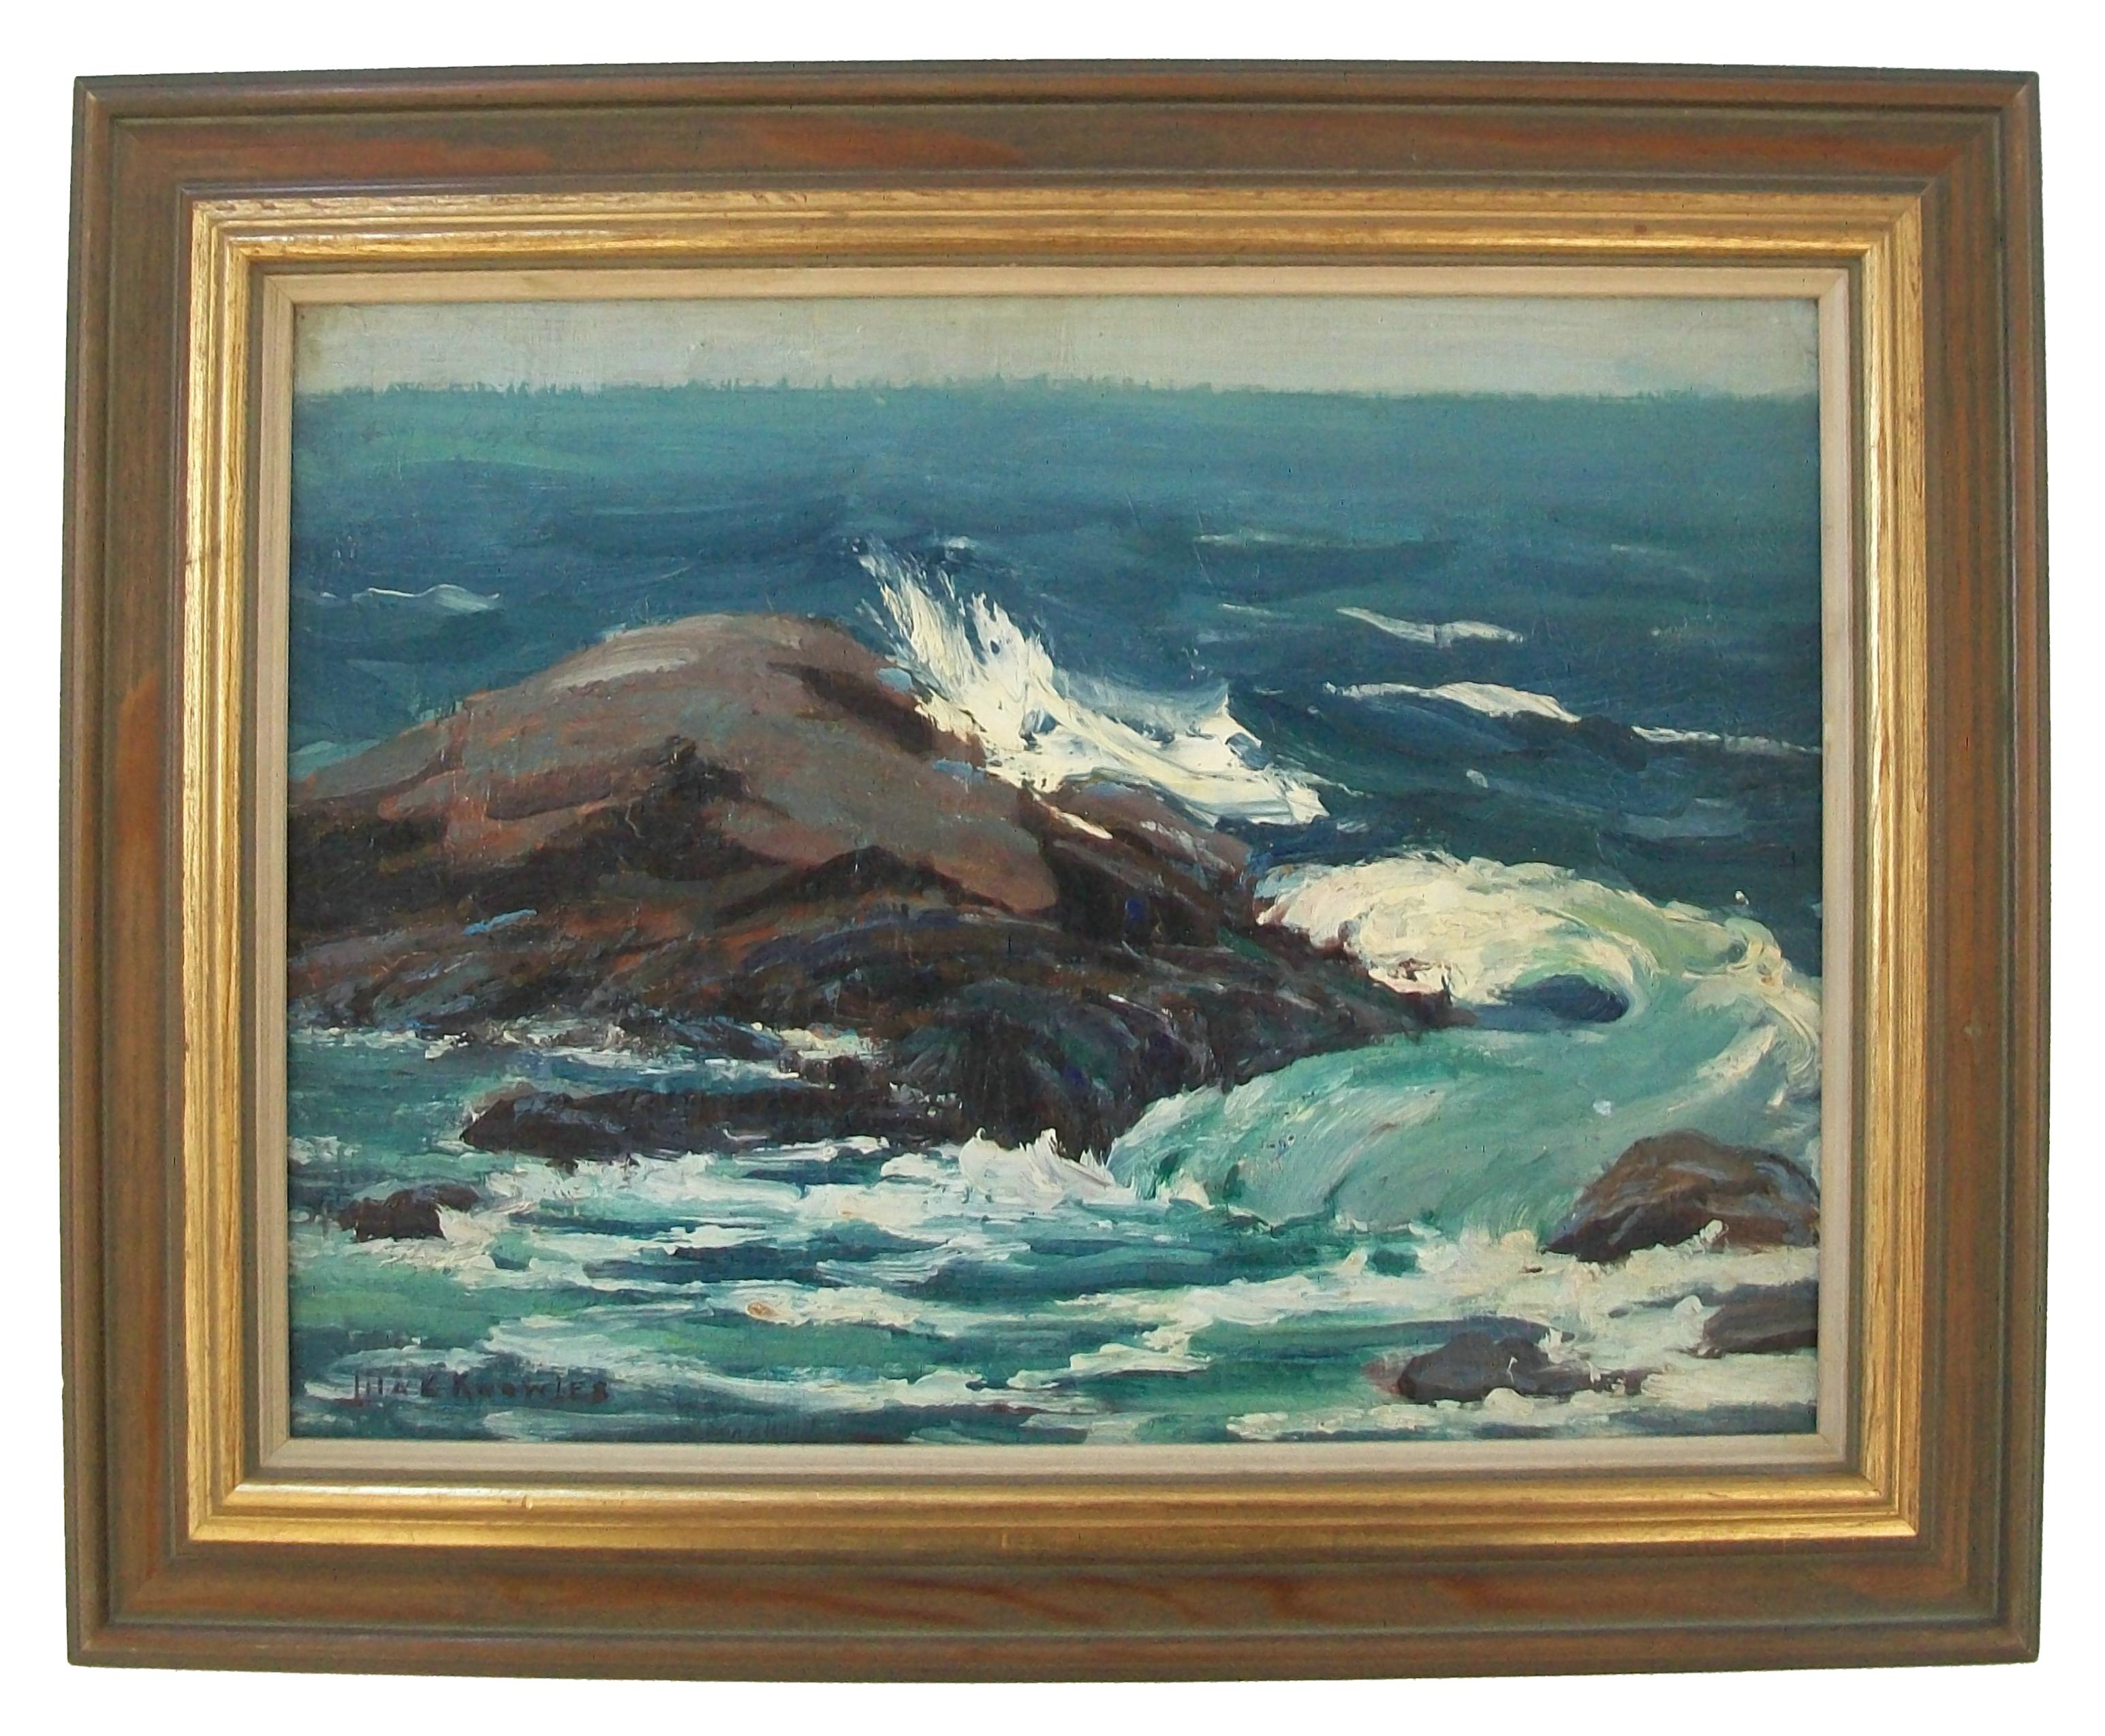 LILA CAROLINE MCGILLIVRAY KNOWLES (1886-1979) - 'The Sea' - Peinture à l'huile d'art du milieu du siècle, paysage marin, sur toile montée sur panneau de carton - avec de gros empâtements - signée en bas à gauche - étiquette d'exposition de 1943 de